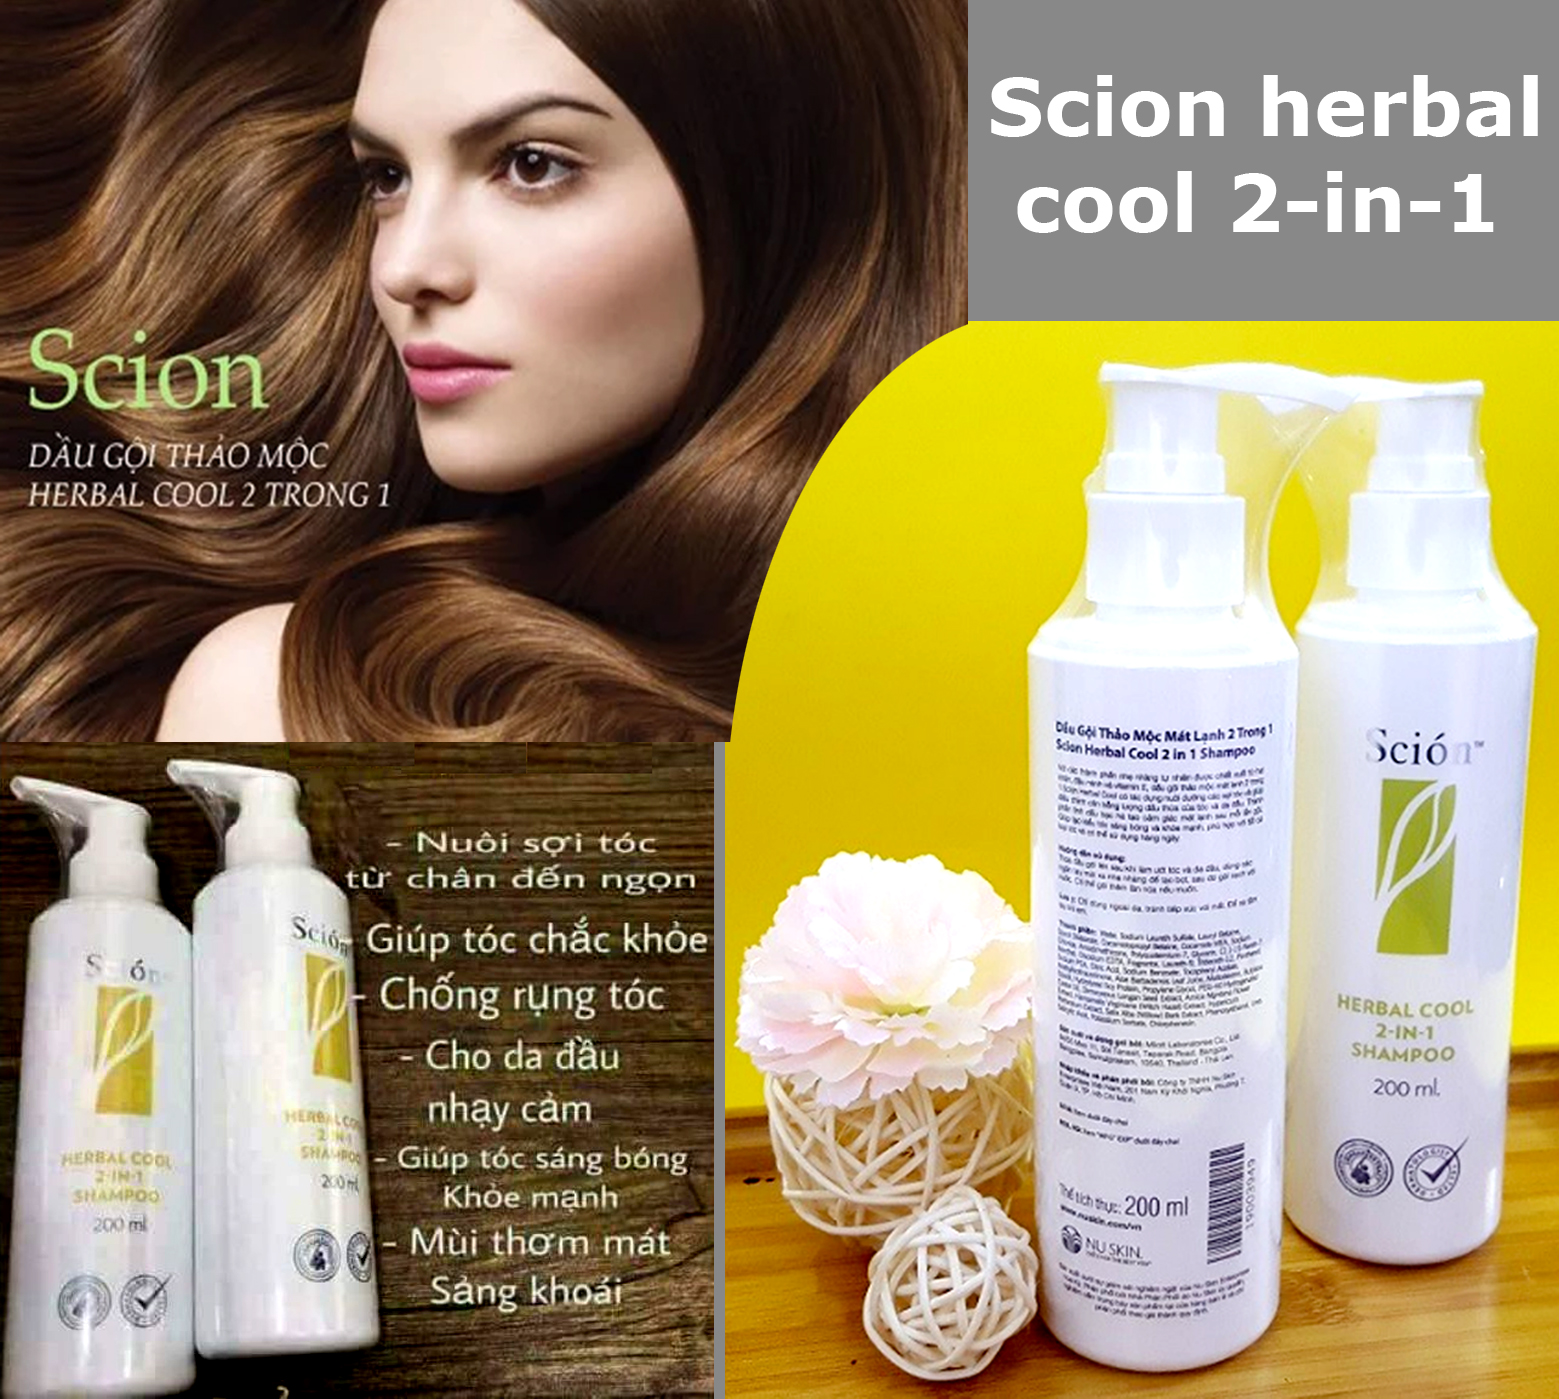 Scion herbal cool 2-in-1 không chỉ mang đến cho bạn mái tóc sạch và thơm mát, mà còn nuôi dưỡng từ bên trong. Sản phẩm chứa các thành phần thiên nhiên giúp tóc mọc khỏe mạnh và ngăn ngừa gãy rụng. Đừng bỏ lỡ cơ hội khám phá Scion herbal cool 2-in-1 qua hình ảnh liên quan.